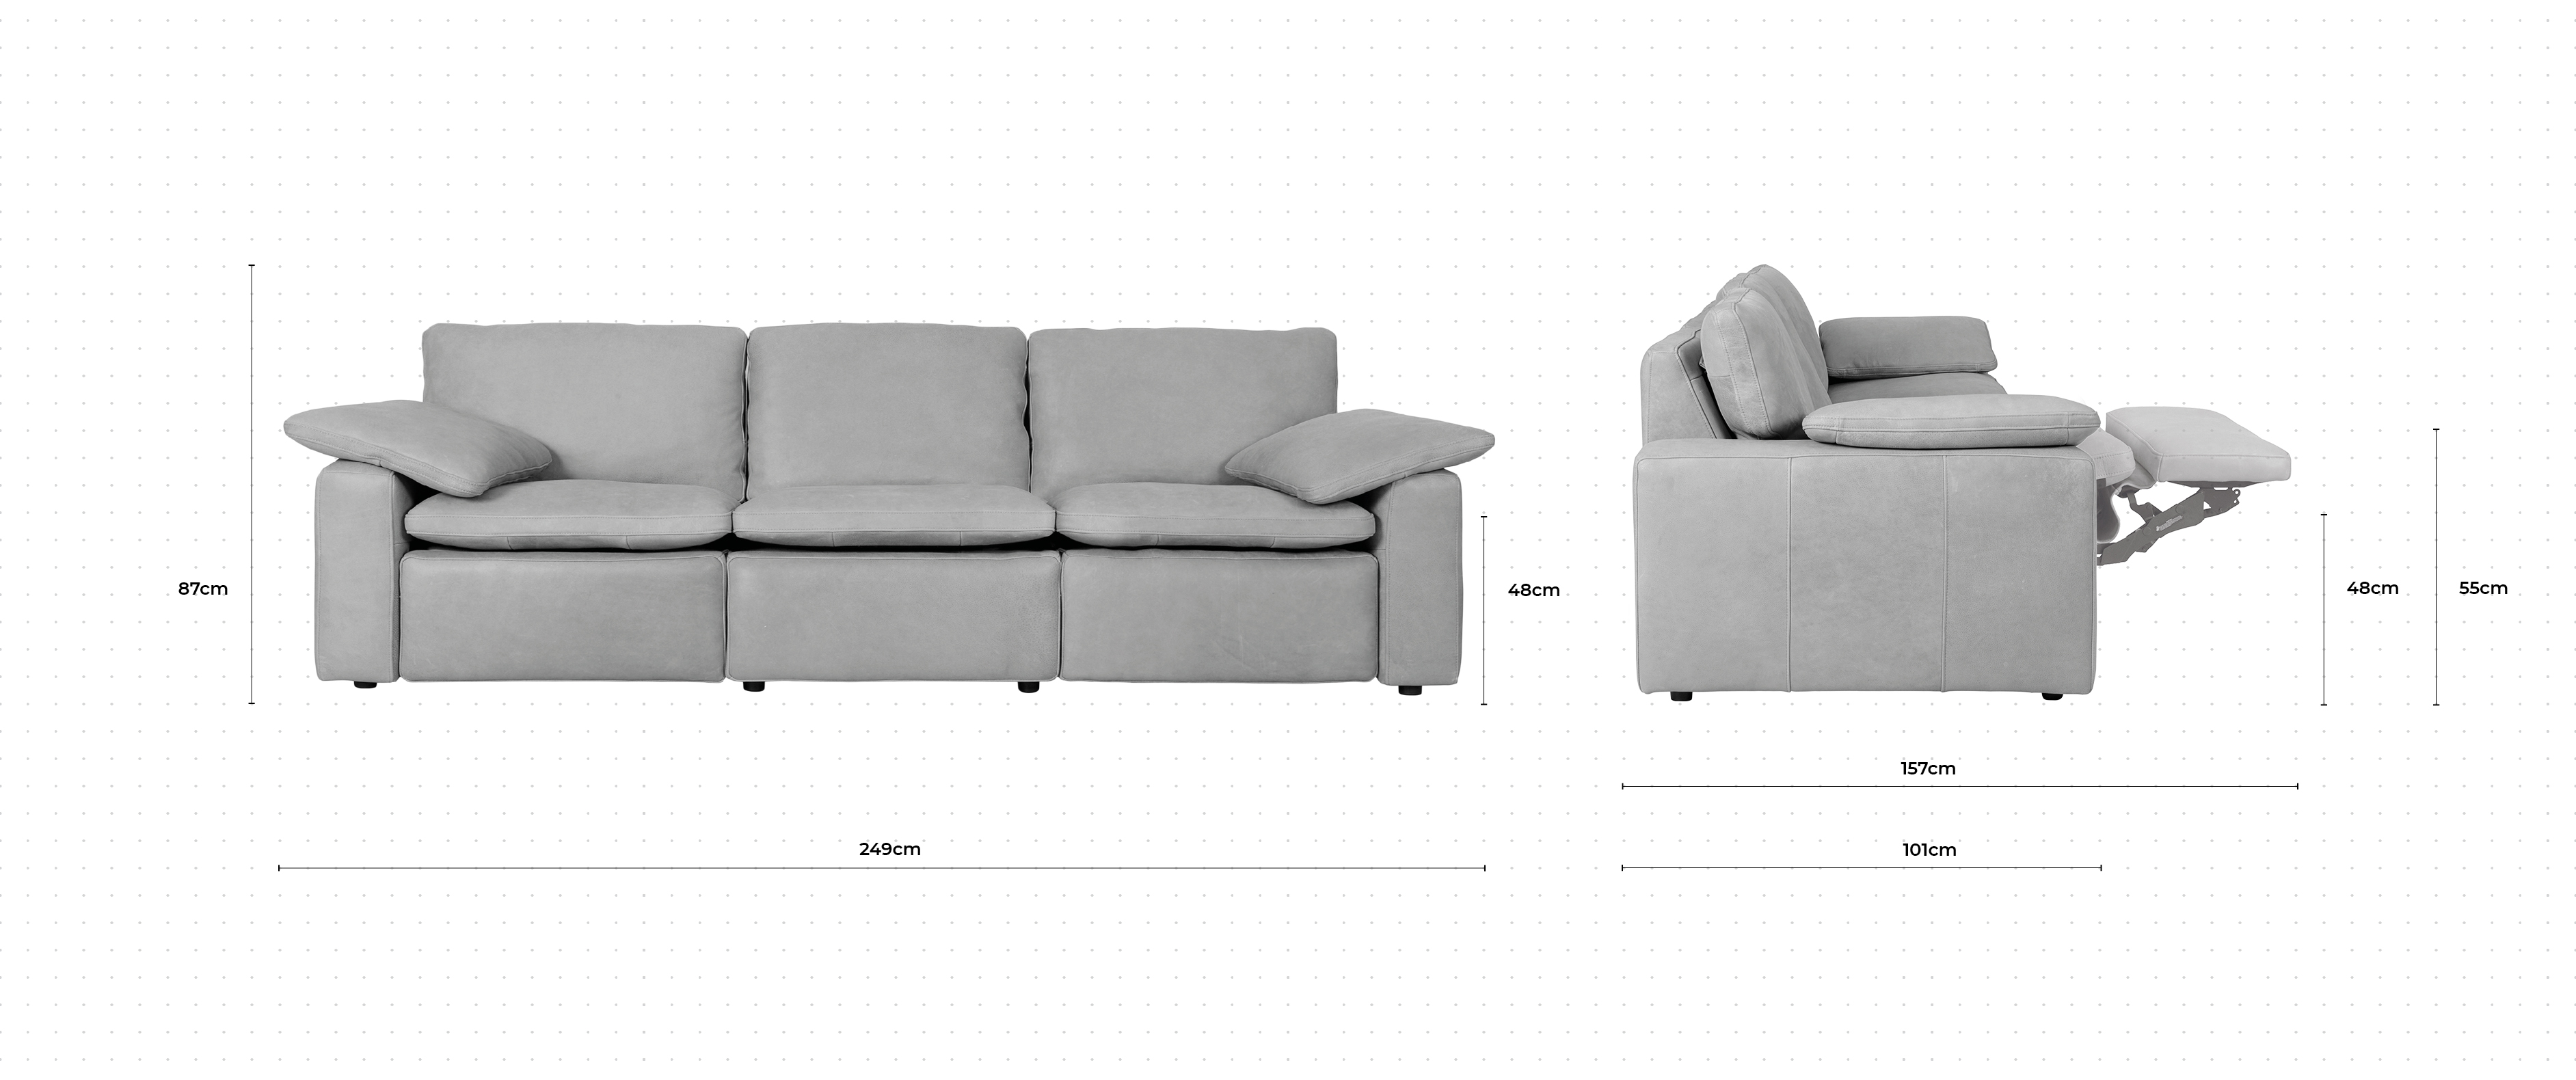 Martin 2 Seater Sofa dimensions